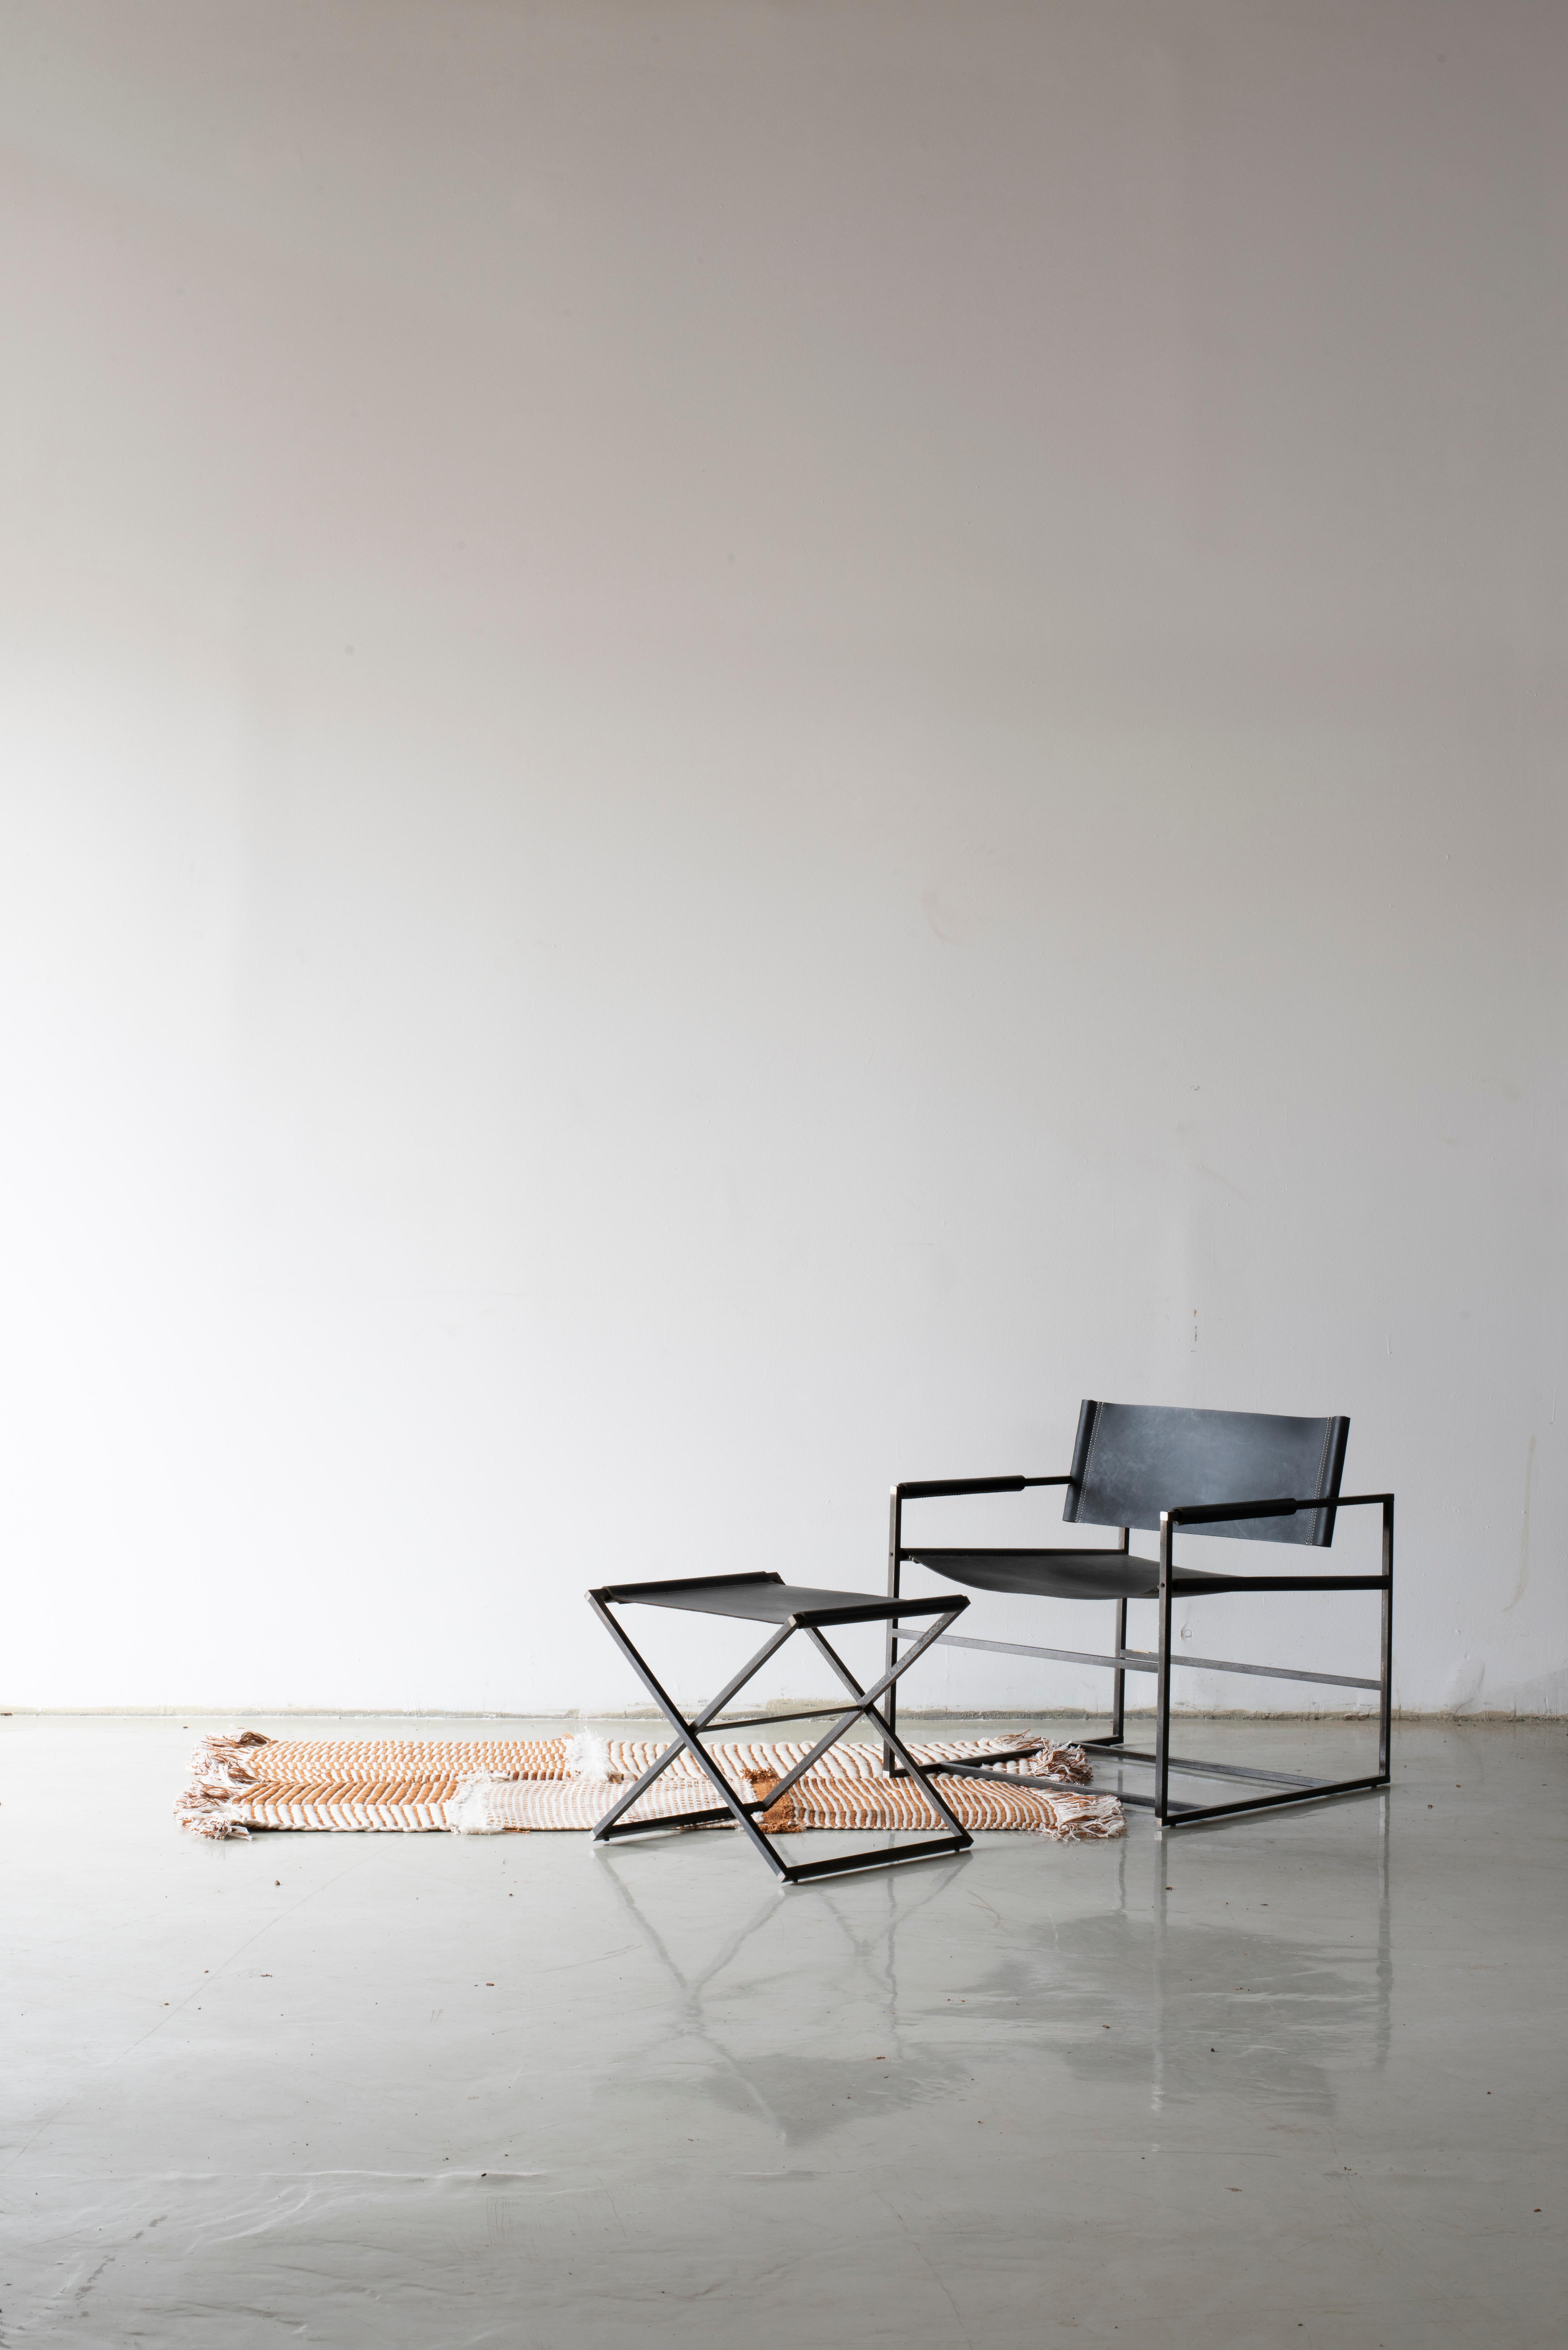 De sa première esquisse à son exécution, le fauteuil_01 a été fabriqué à la main en cuir et en acier,  conçu comme un meuble simple, classique et sophistiqué. Sa structure ergonomique soutient le bas du dos, tandis que l'utilisation d'un cuir solide